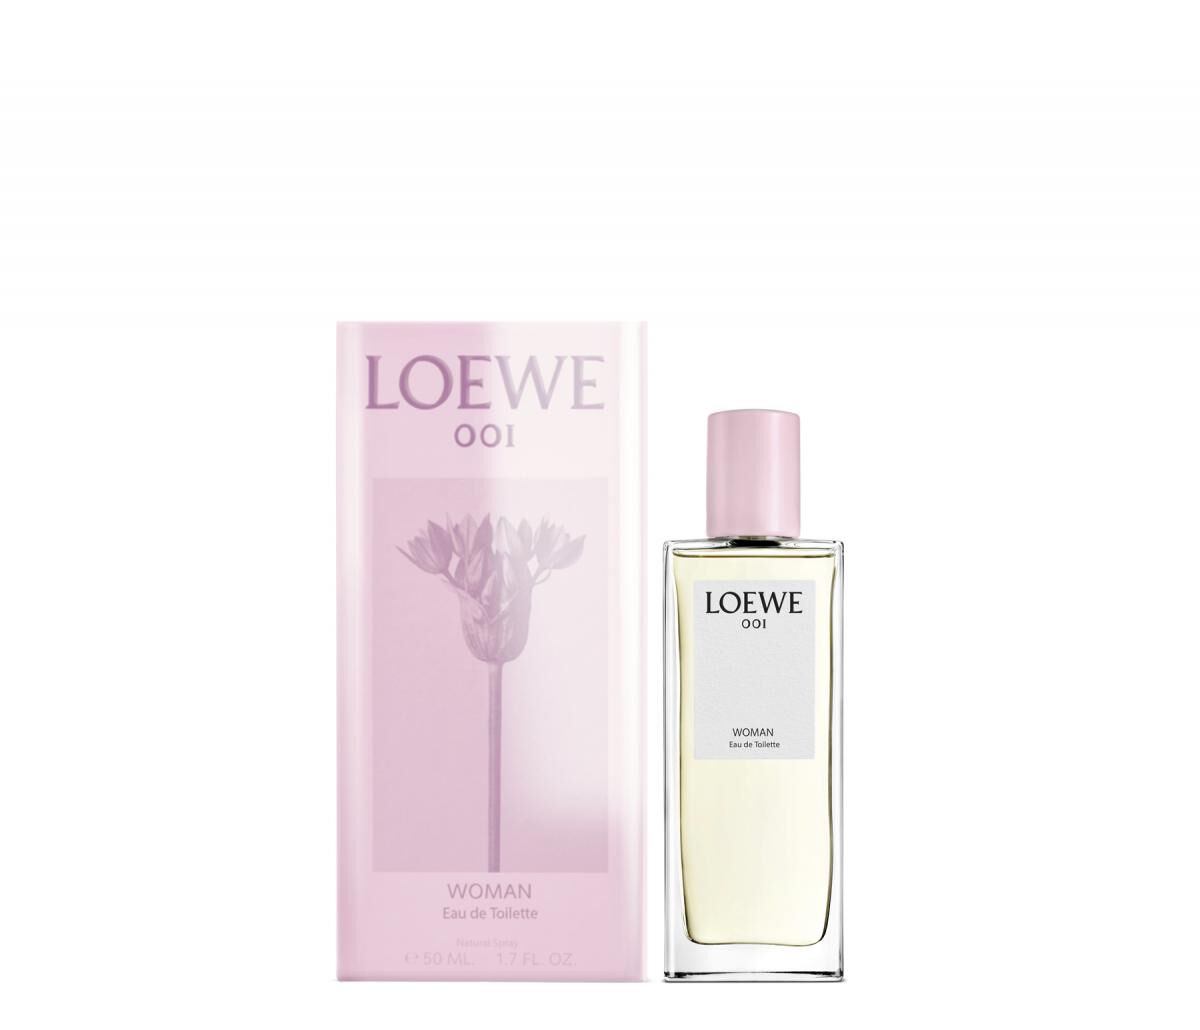 Loewe 001 Woman EDT Special Edition Loewe Parfum - ein neues Parfum für